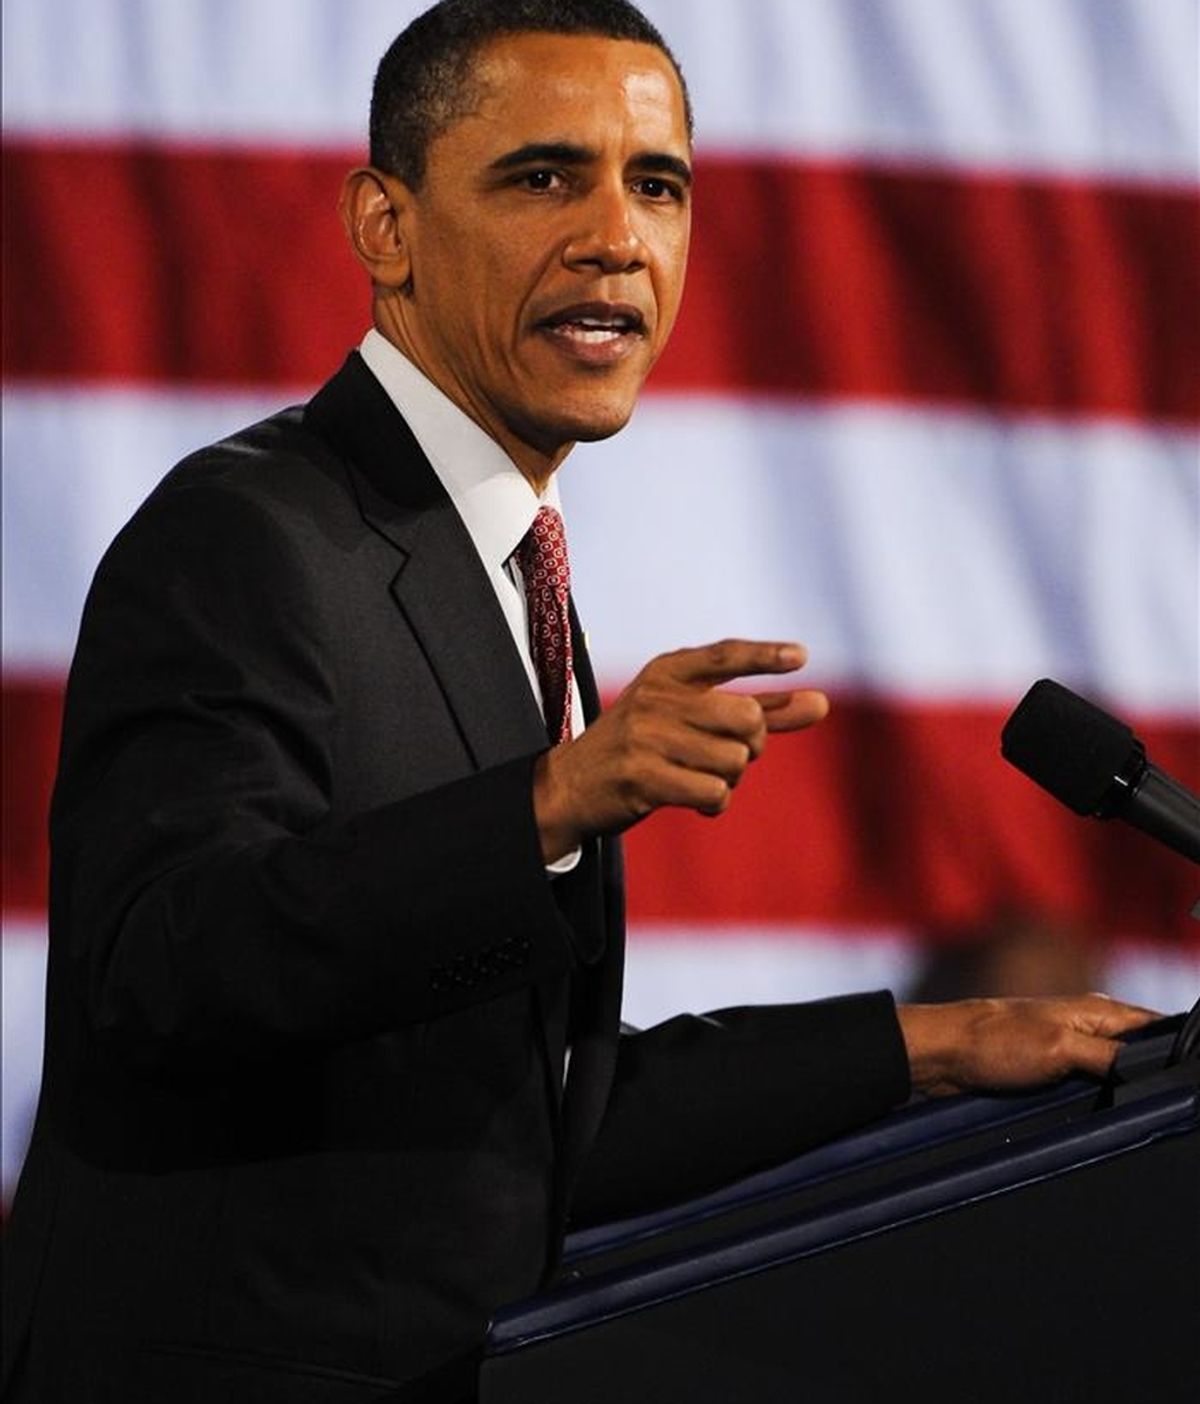 El presidente de Estados Unidos Barack Obama pronuncia un discurso. EFE/Archivo